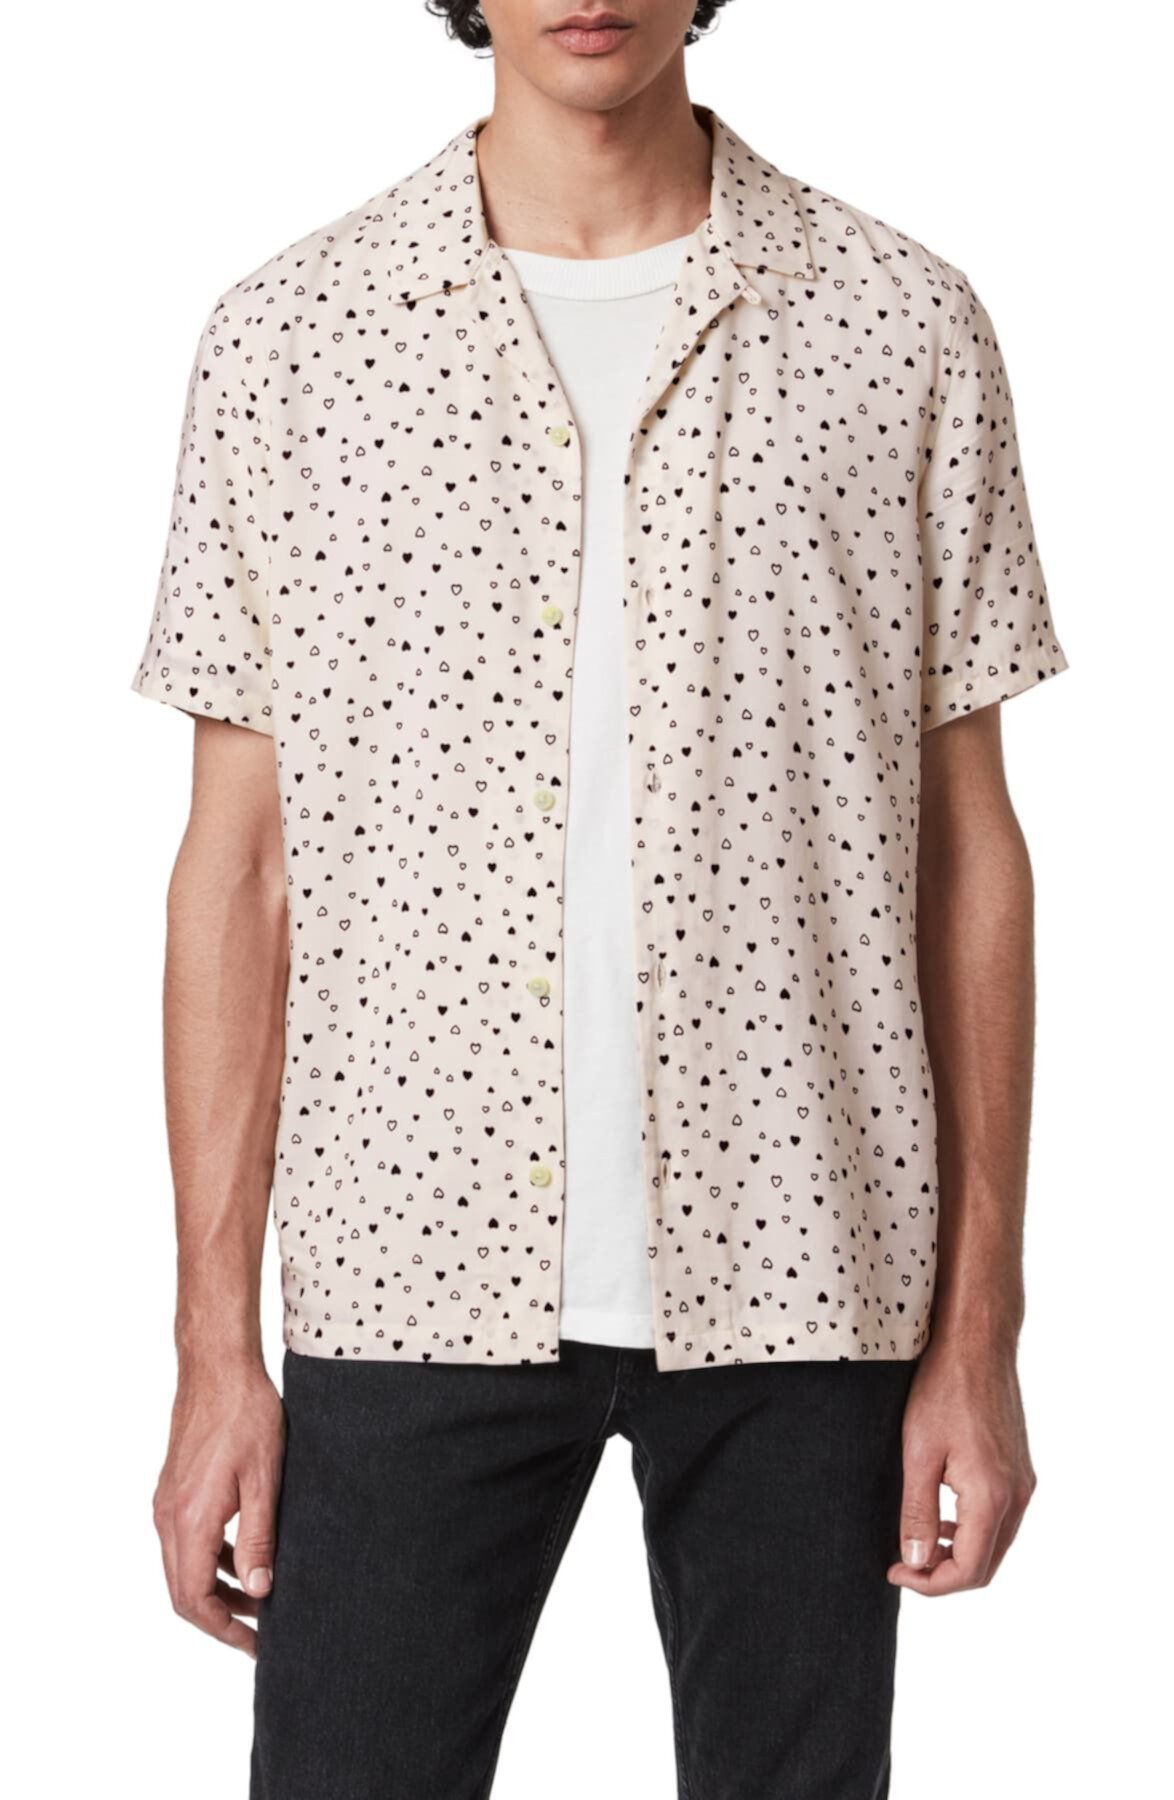 Рубашка для походов с короткими рукавами и принтом в виде сердечек Amore AllSaints